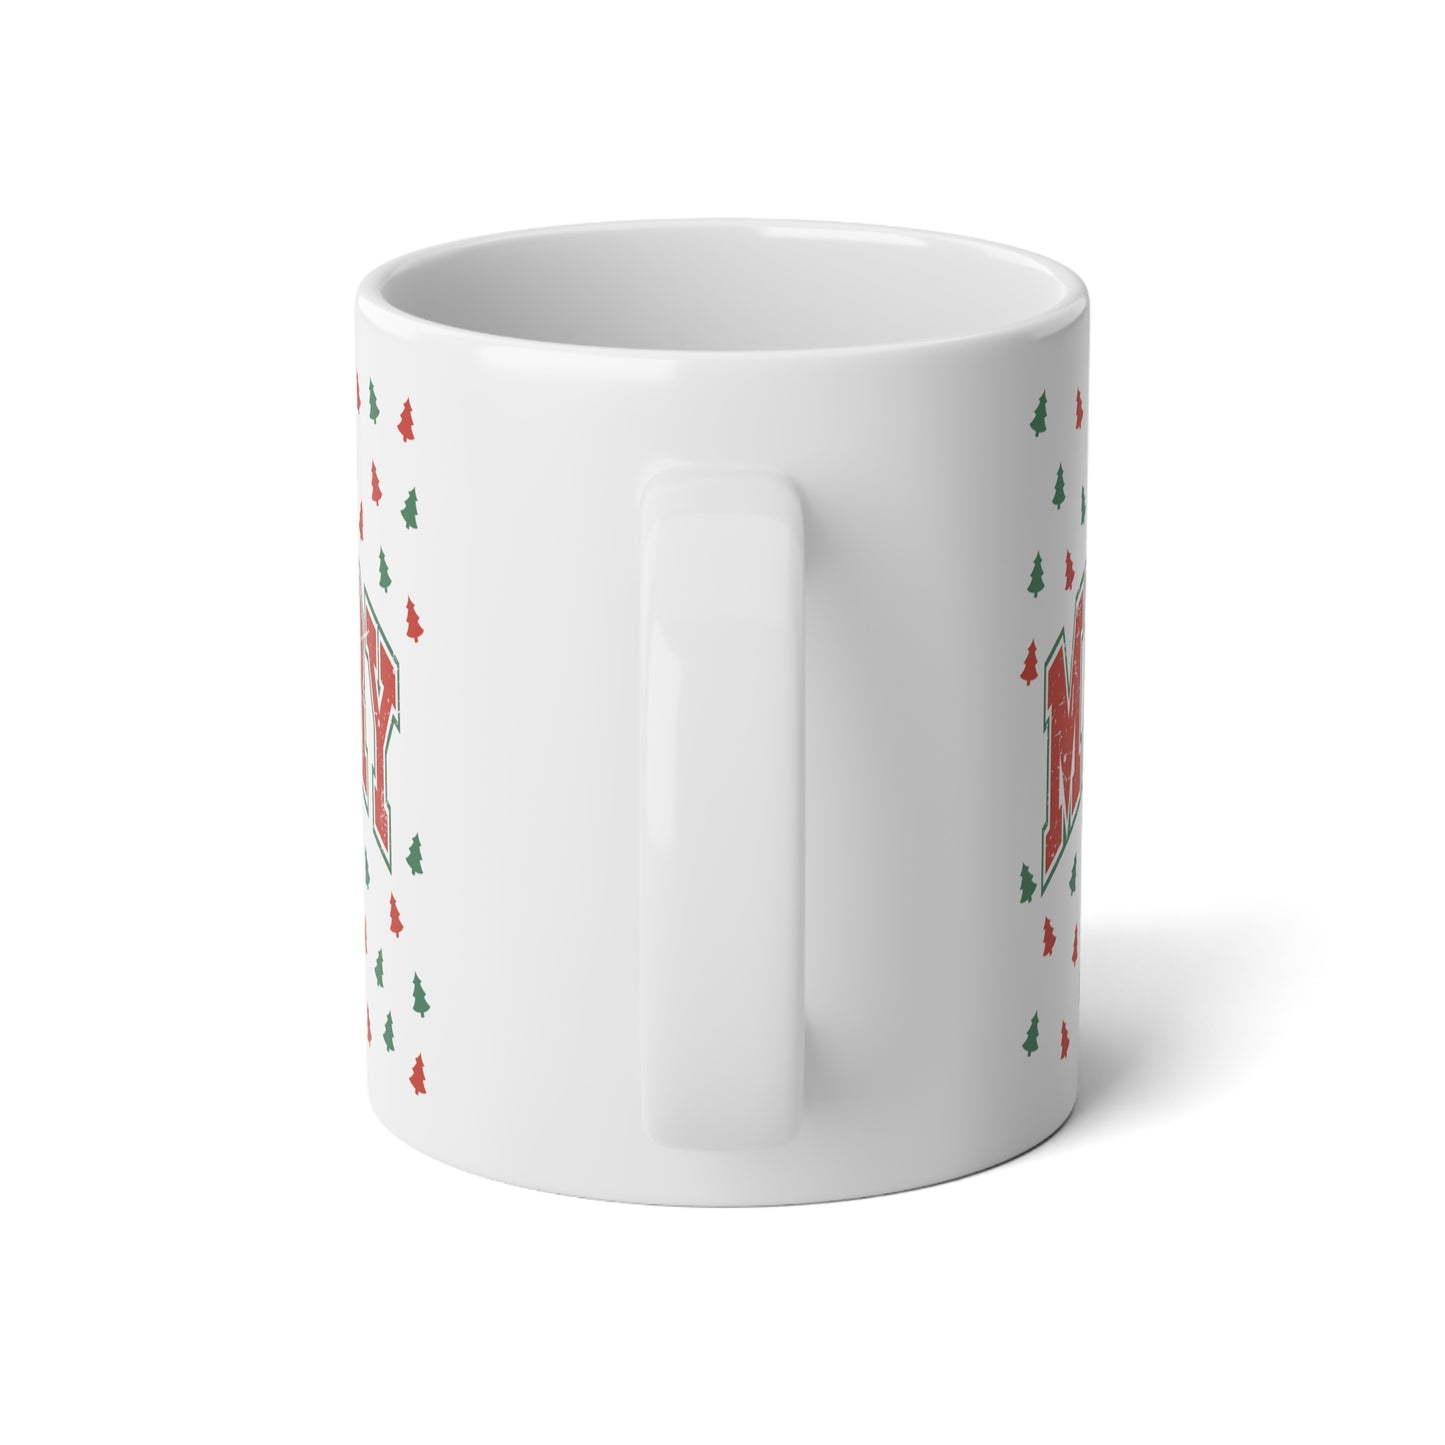 Merry Movies Plaid - Coffee Mug